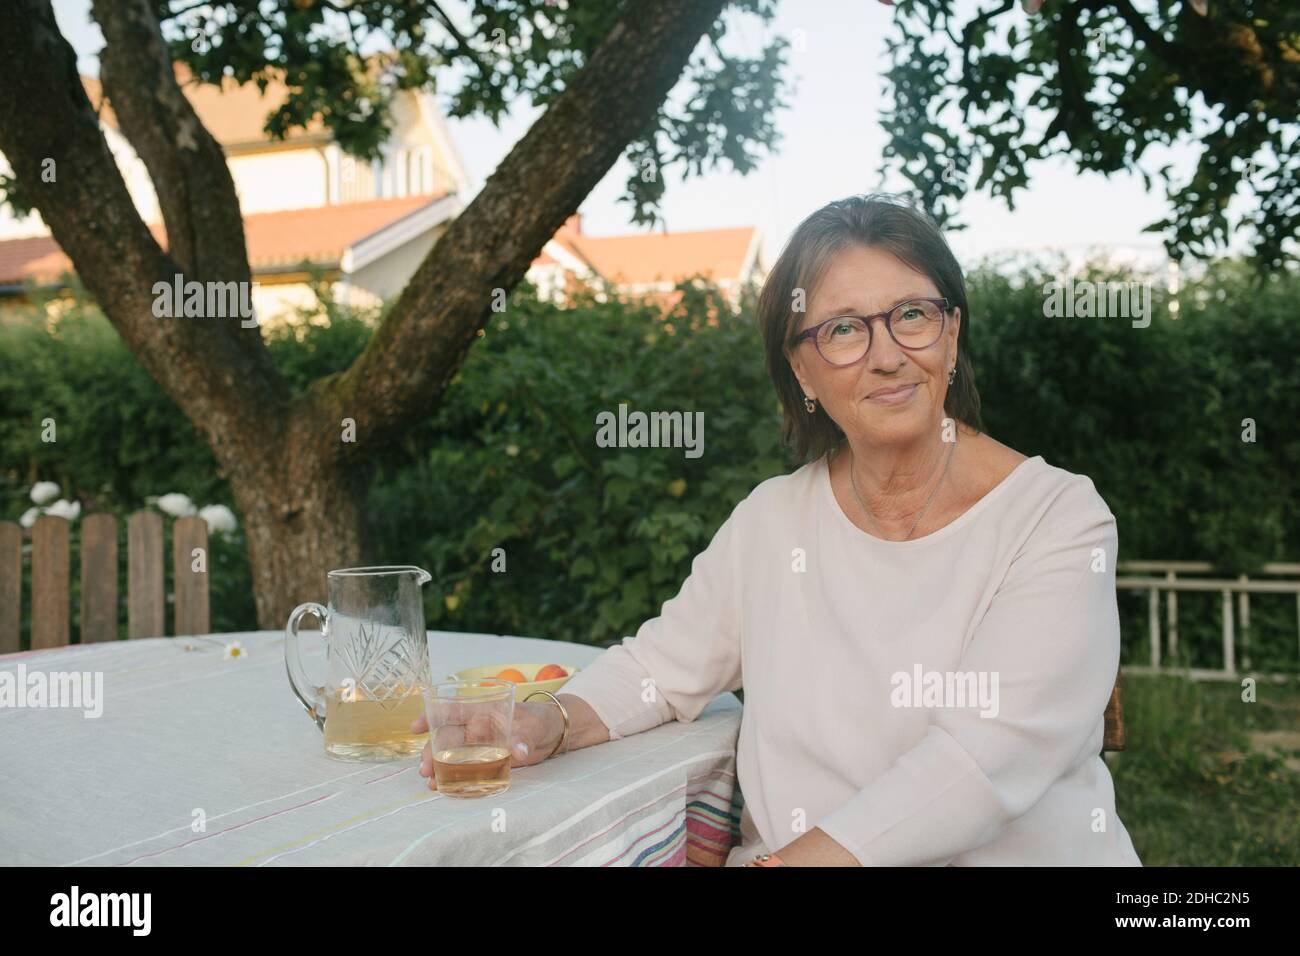 Ritratto di donna sorridente che tiene un drink mentre si siede al tavolo in cortile Foto Stock